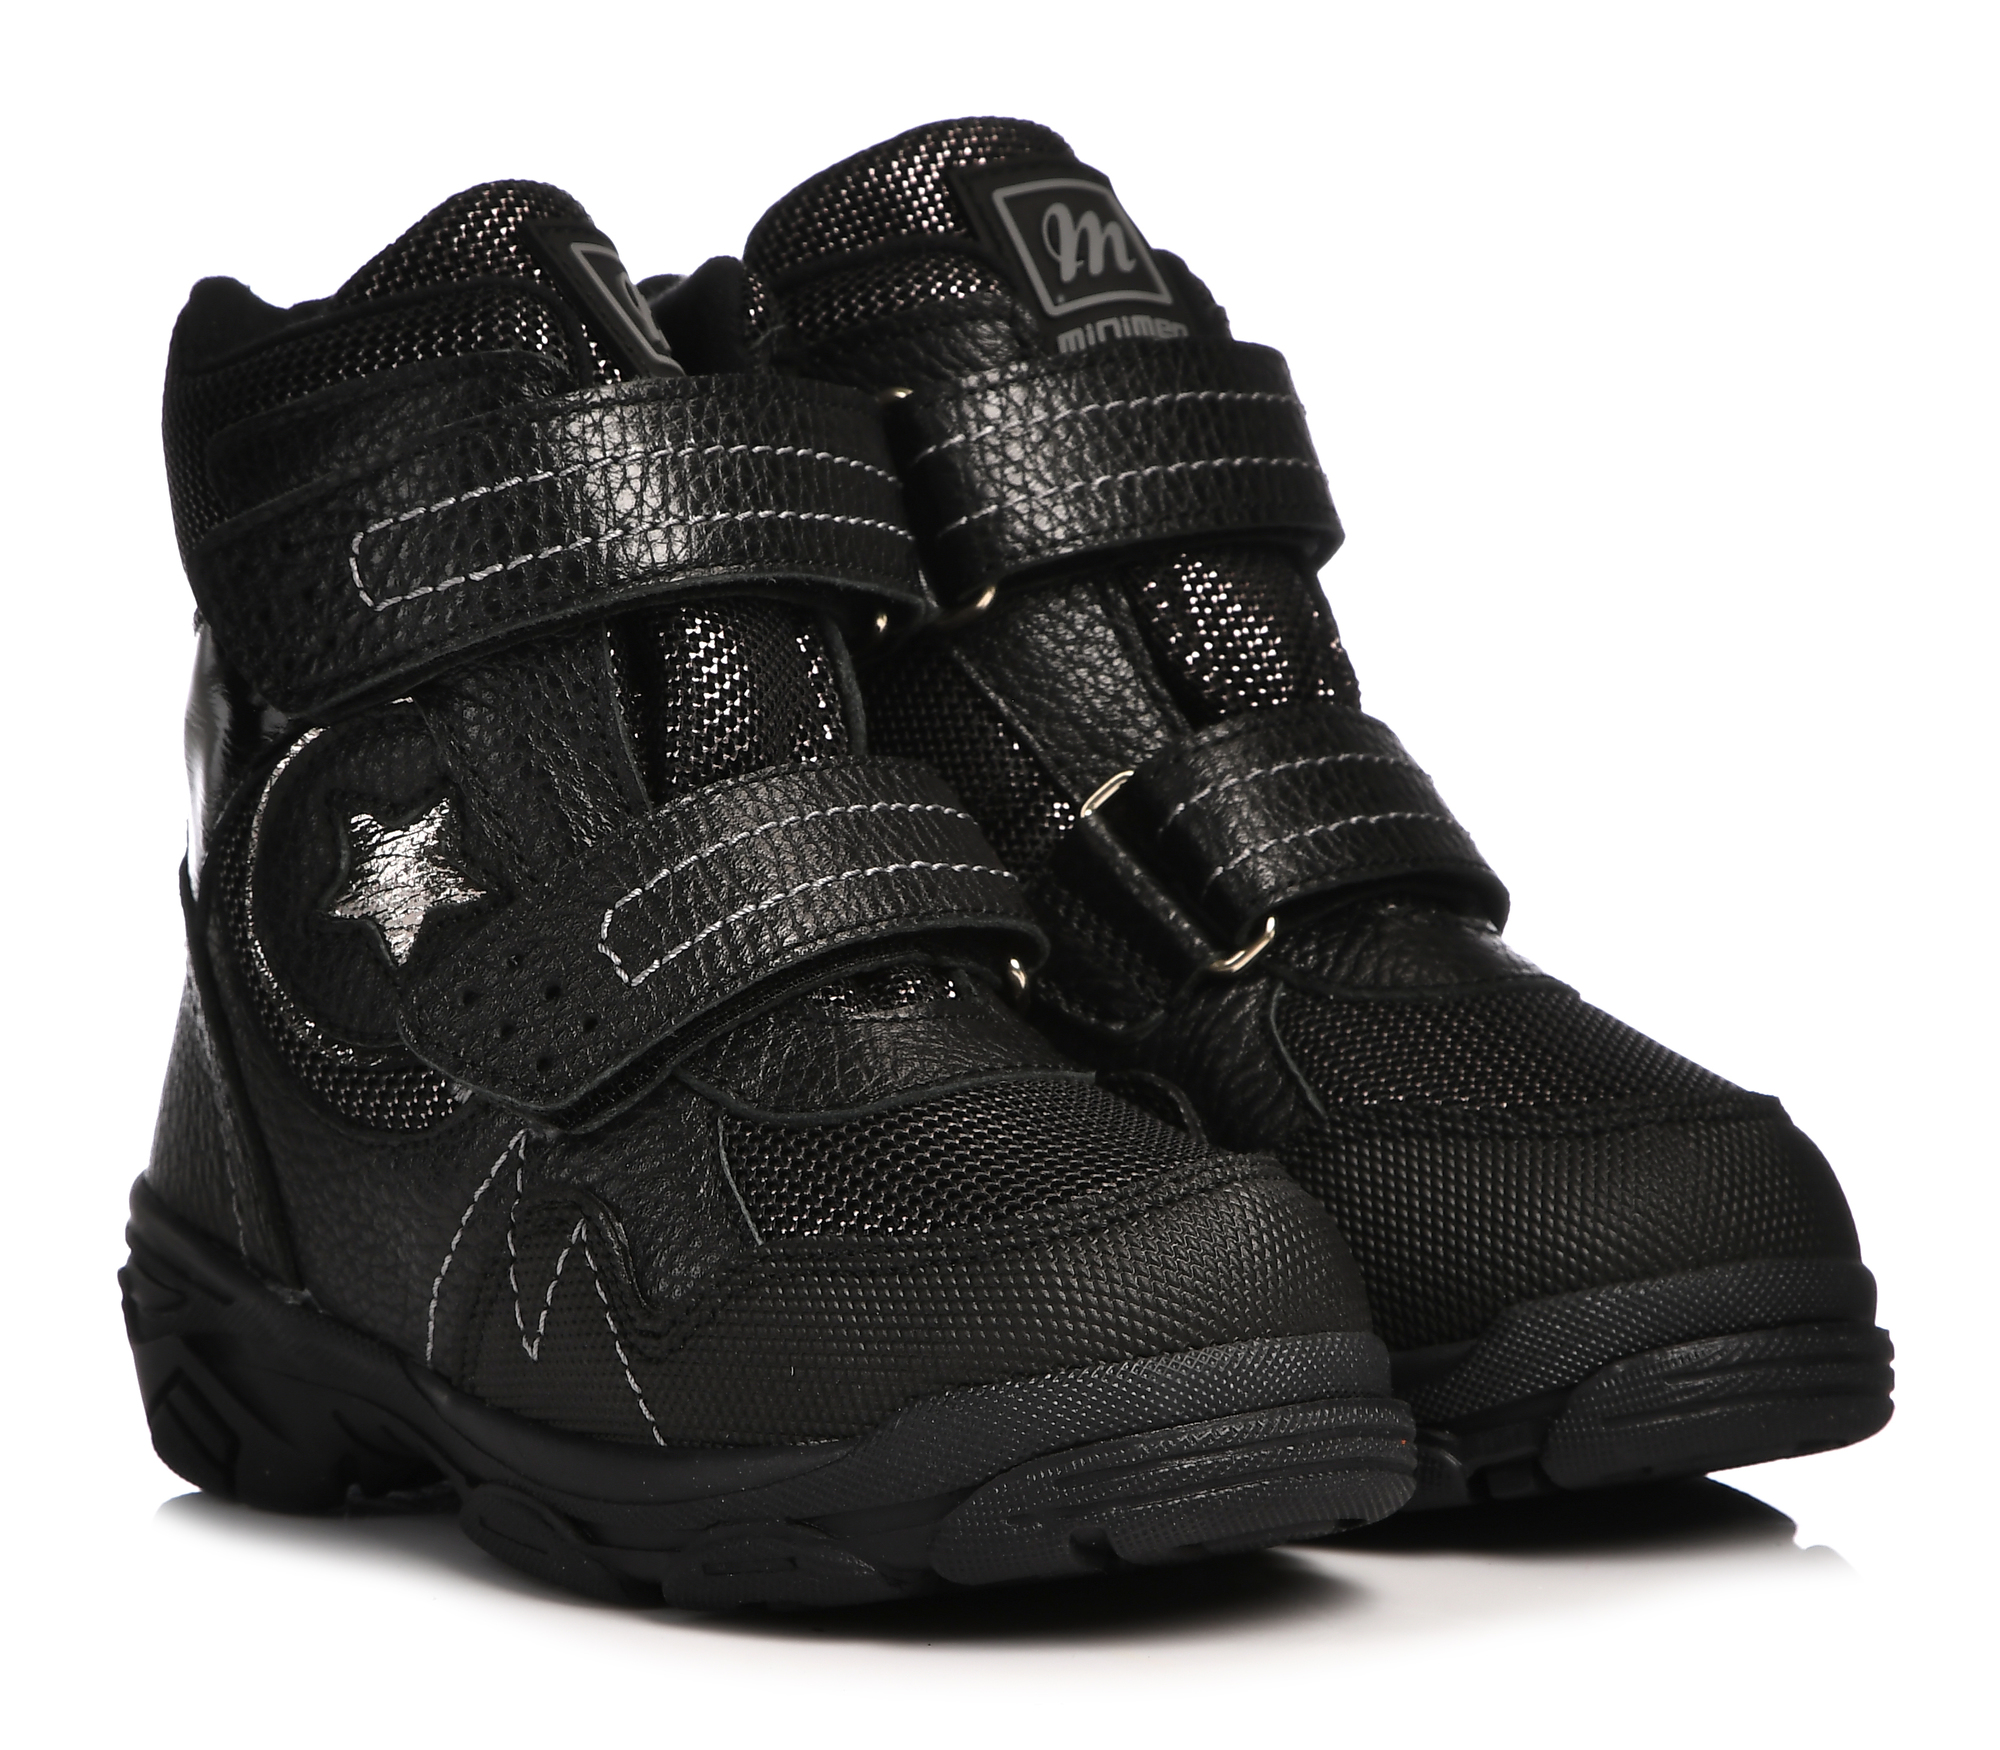 Ботинки Minimen для девочек, чёрные, размер 26, 2658-63-23B-05